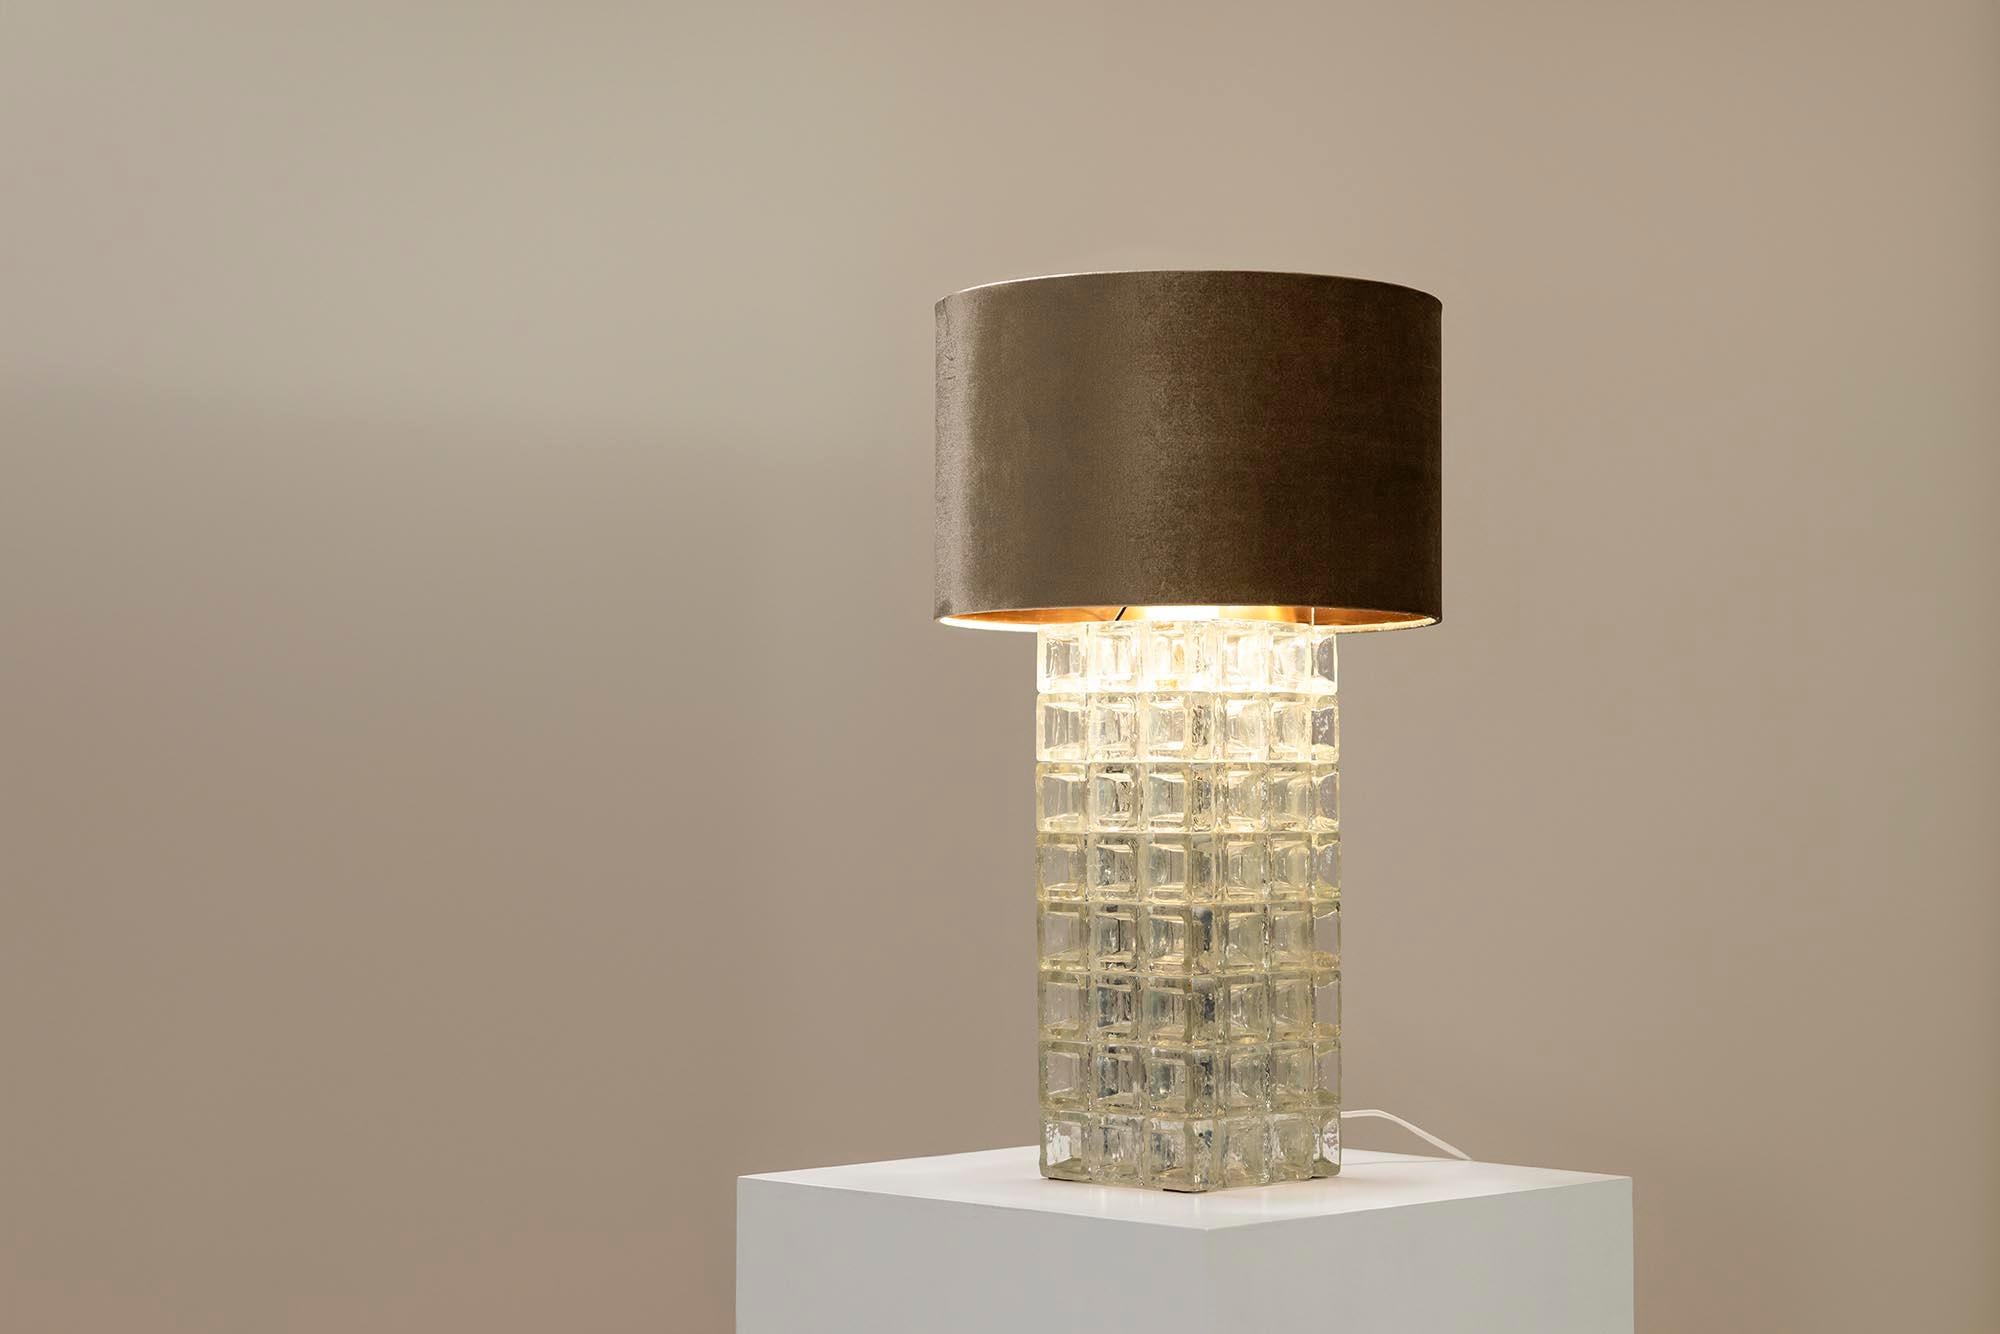 Cette lampe de table peut être décrite comme élégante avec la classe d'un design intemporel. L'artiste verrier italien Albano Steele est à l'origine de cette création, faite de verre et surmontée d'une fixation métallique en acier brossé.Ce qui est